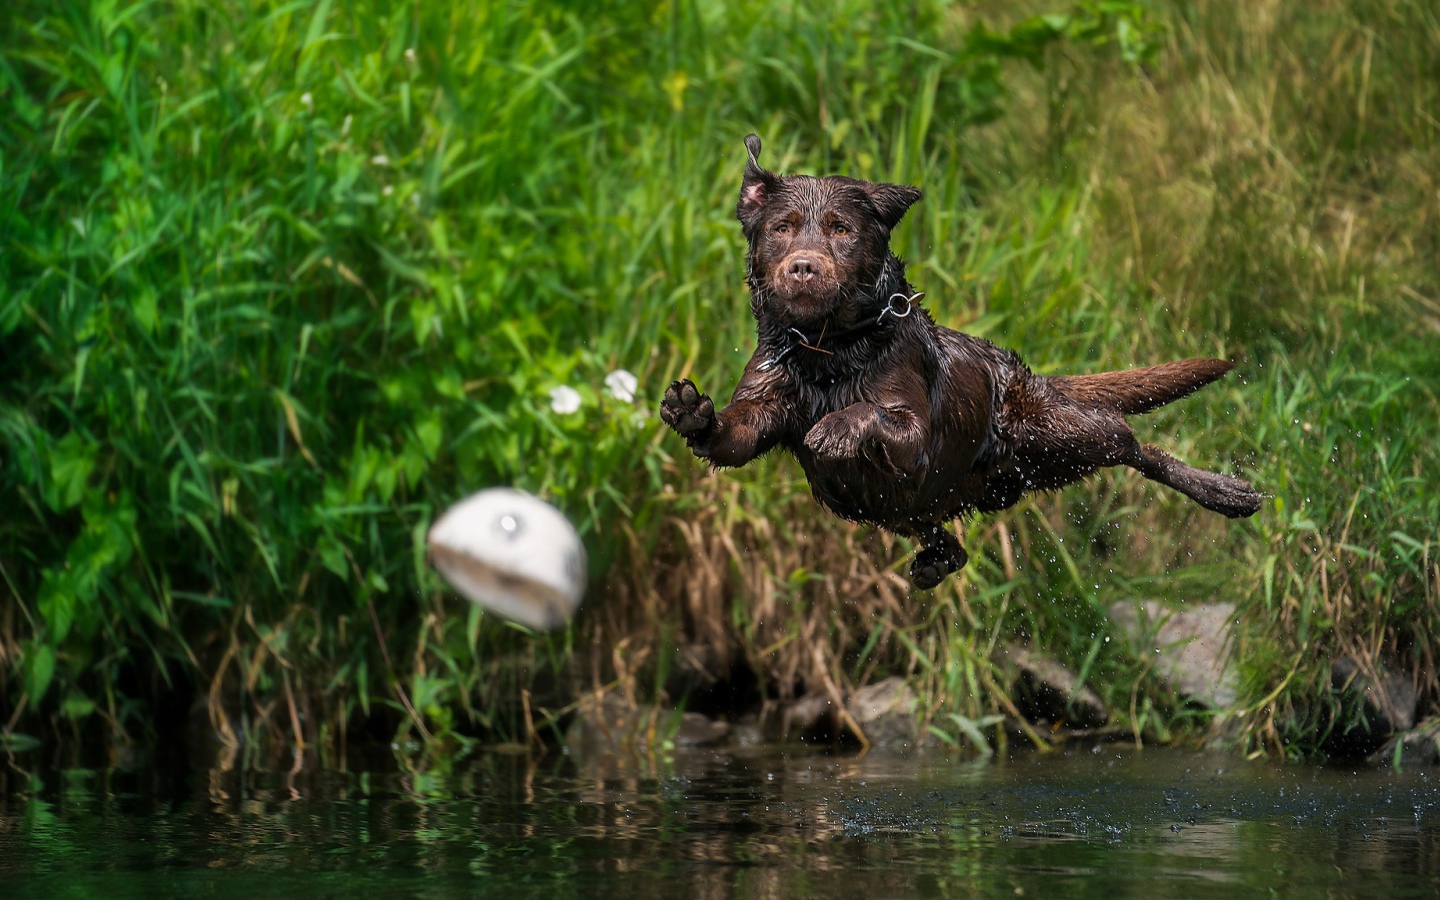 Мокрый лабрадор прыгает в воду за мячом